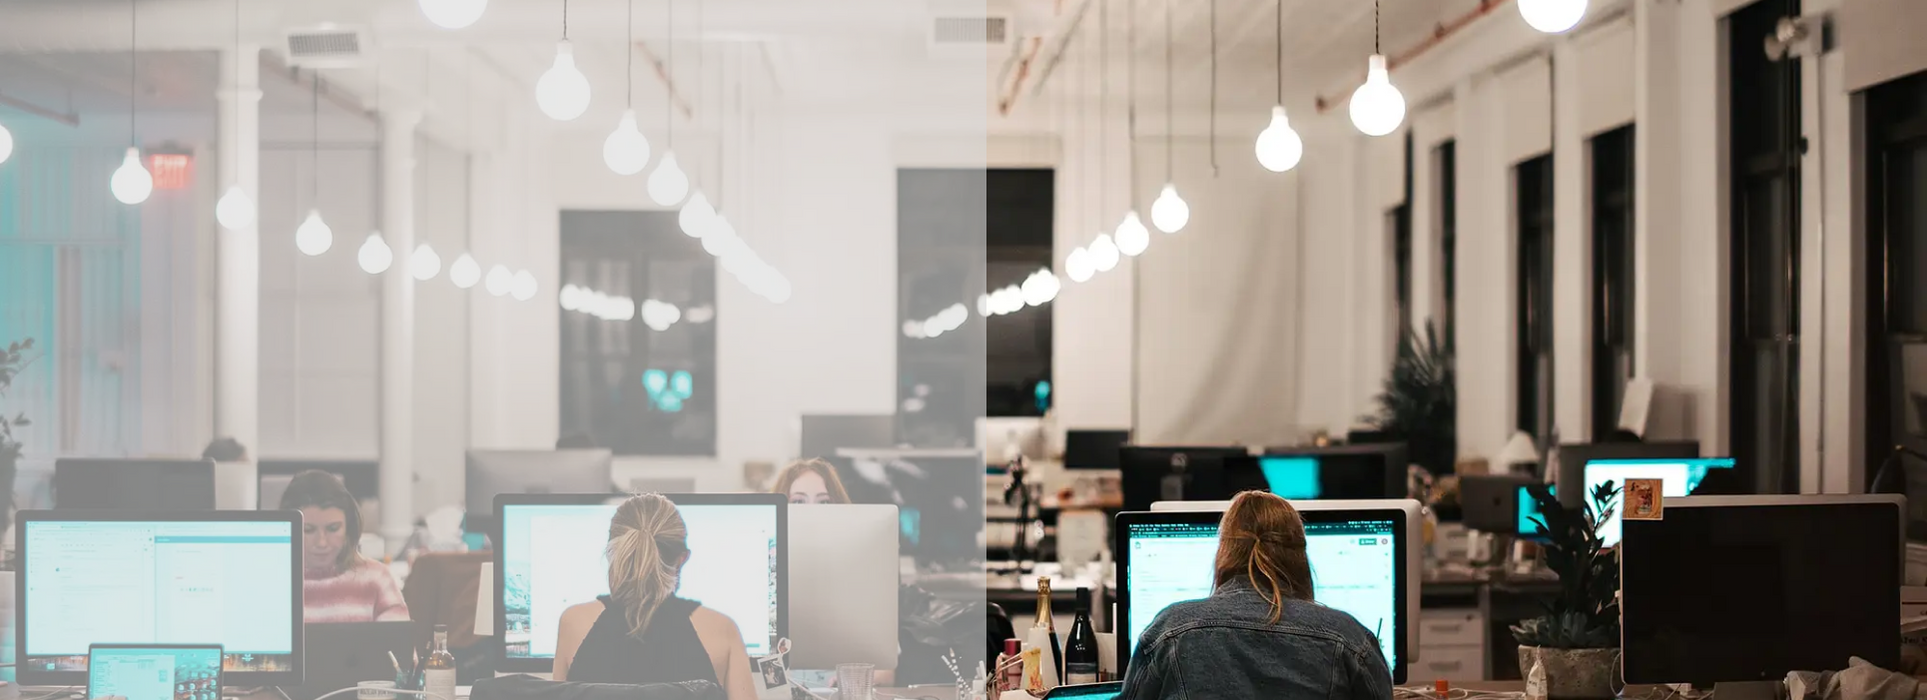 Tecnologia inteligente no local de trabalho - Guia completo para iluminação no local de trabalho